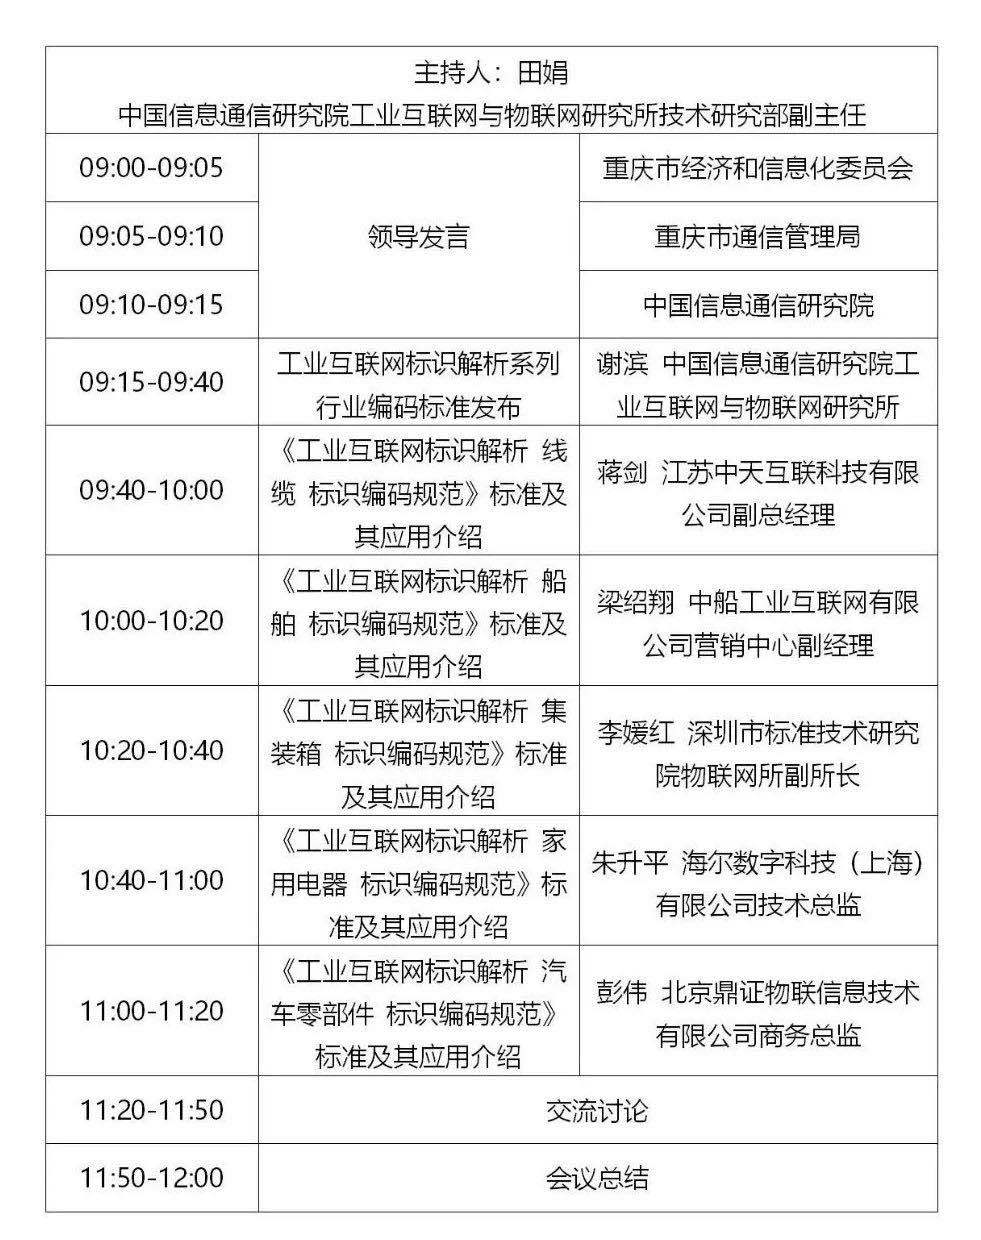 8月21日，“标识解析系列联盟标准宣贯会第一站”将在重庆举办